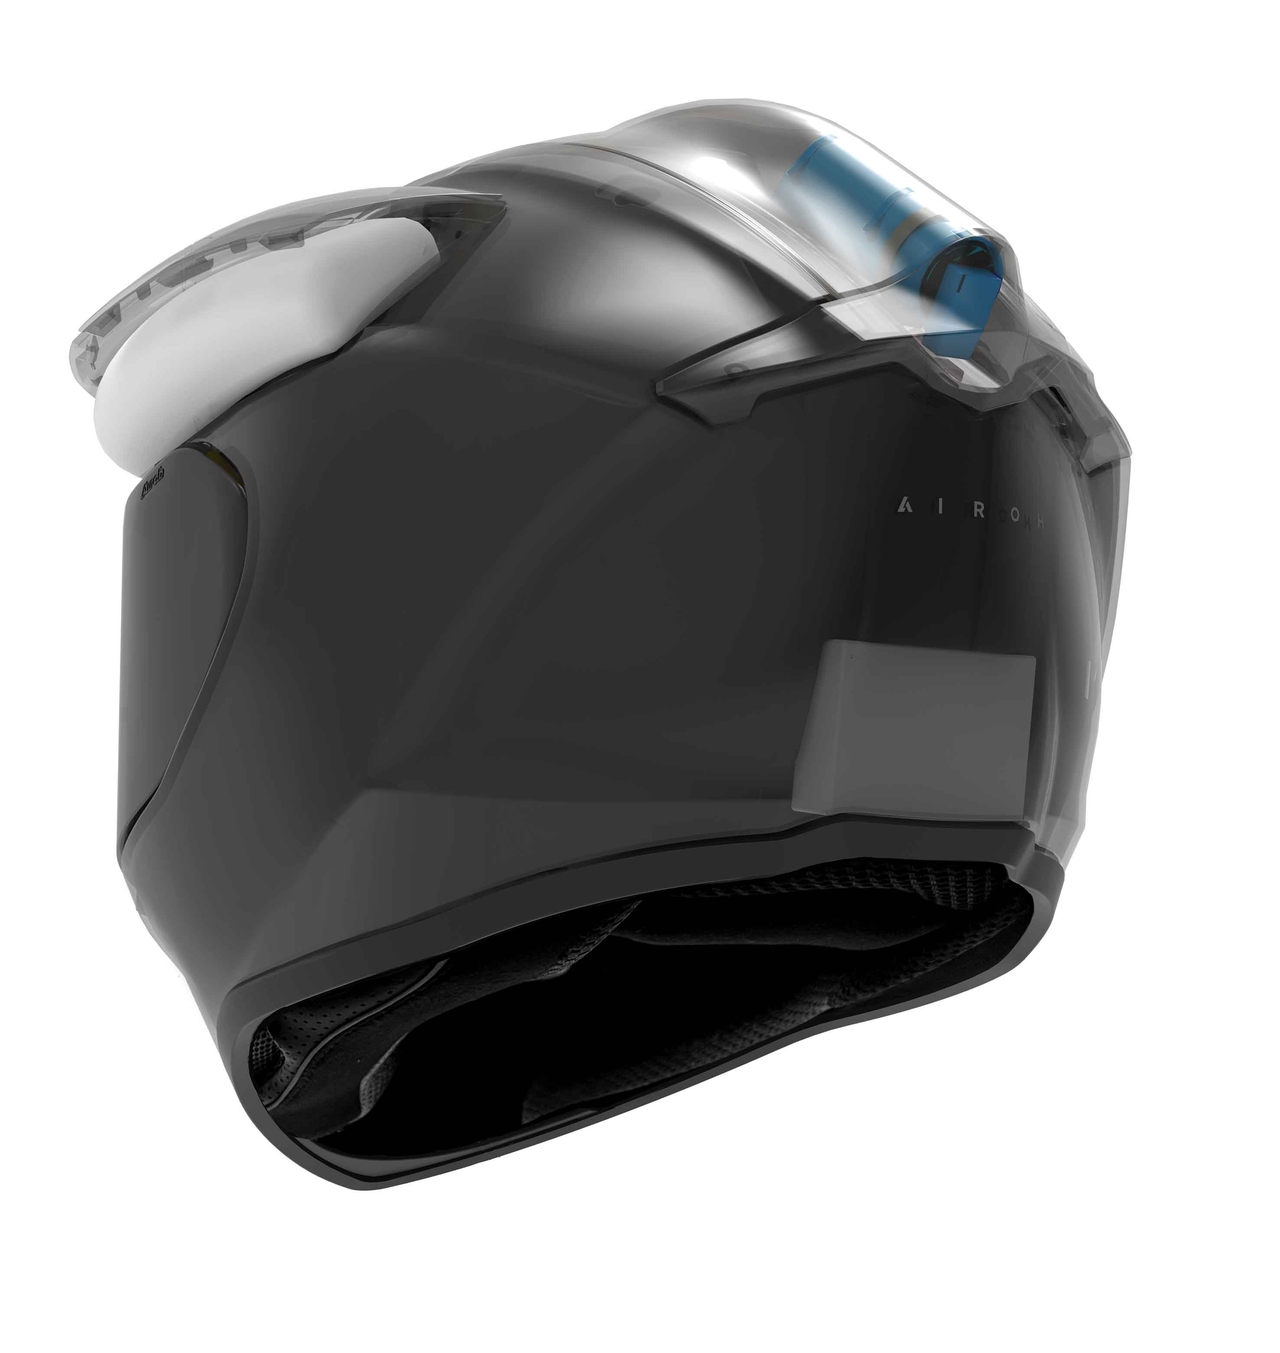 Airoh concept di casco da moto con airbag integrato - Render